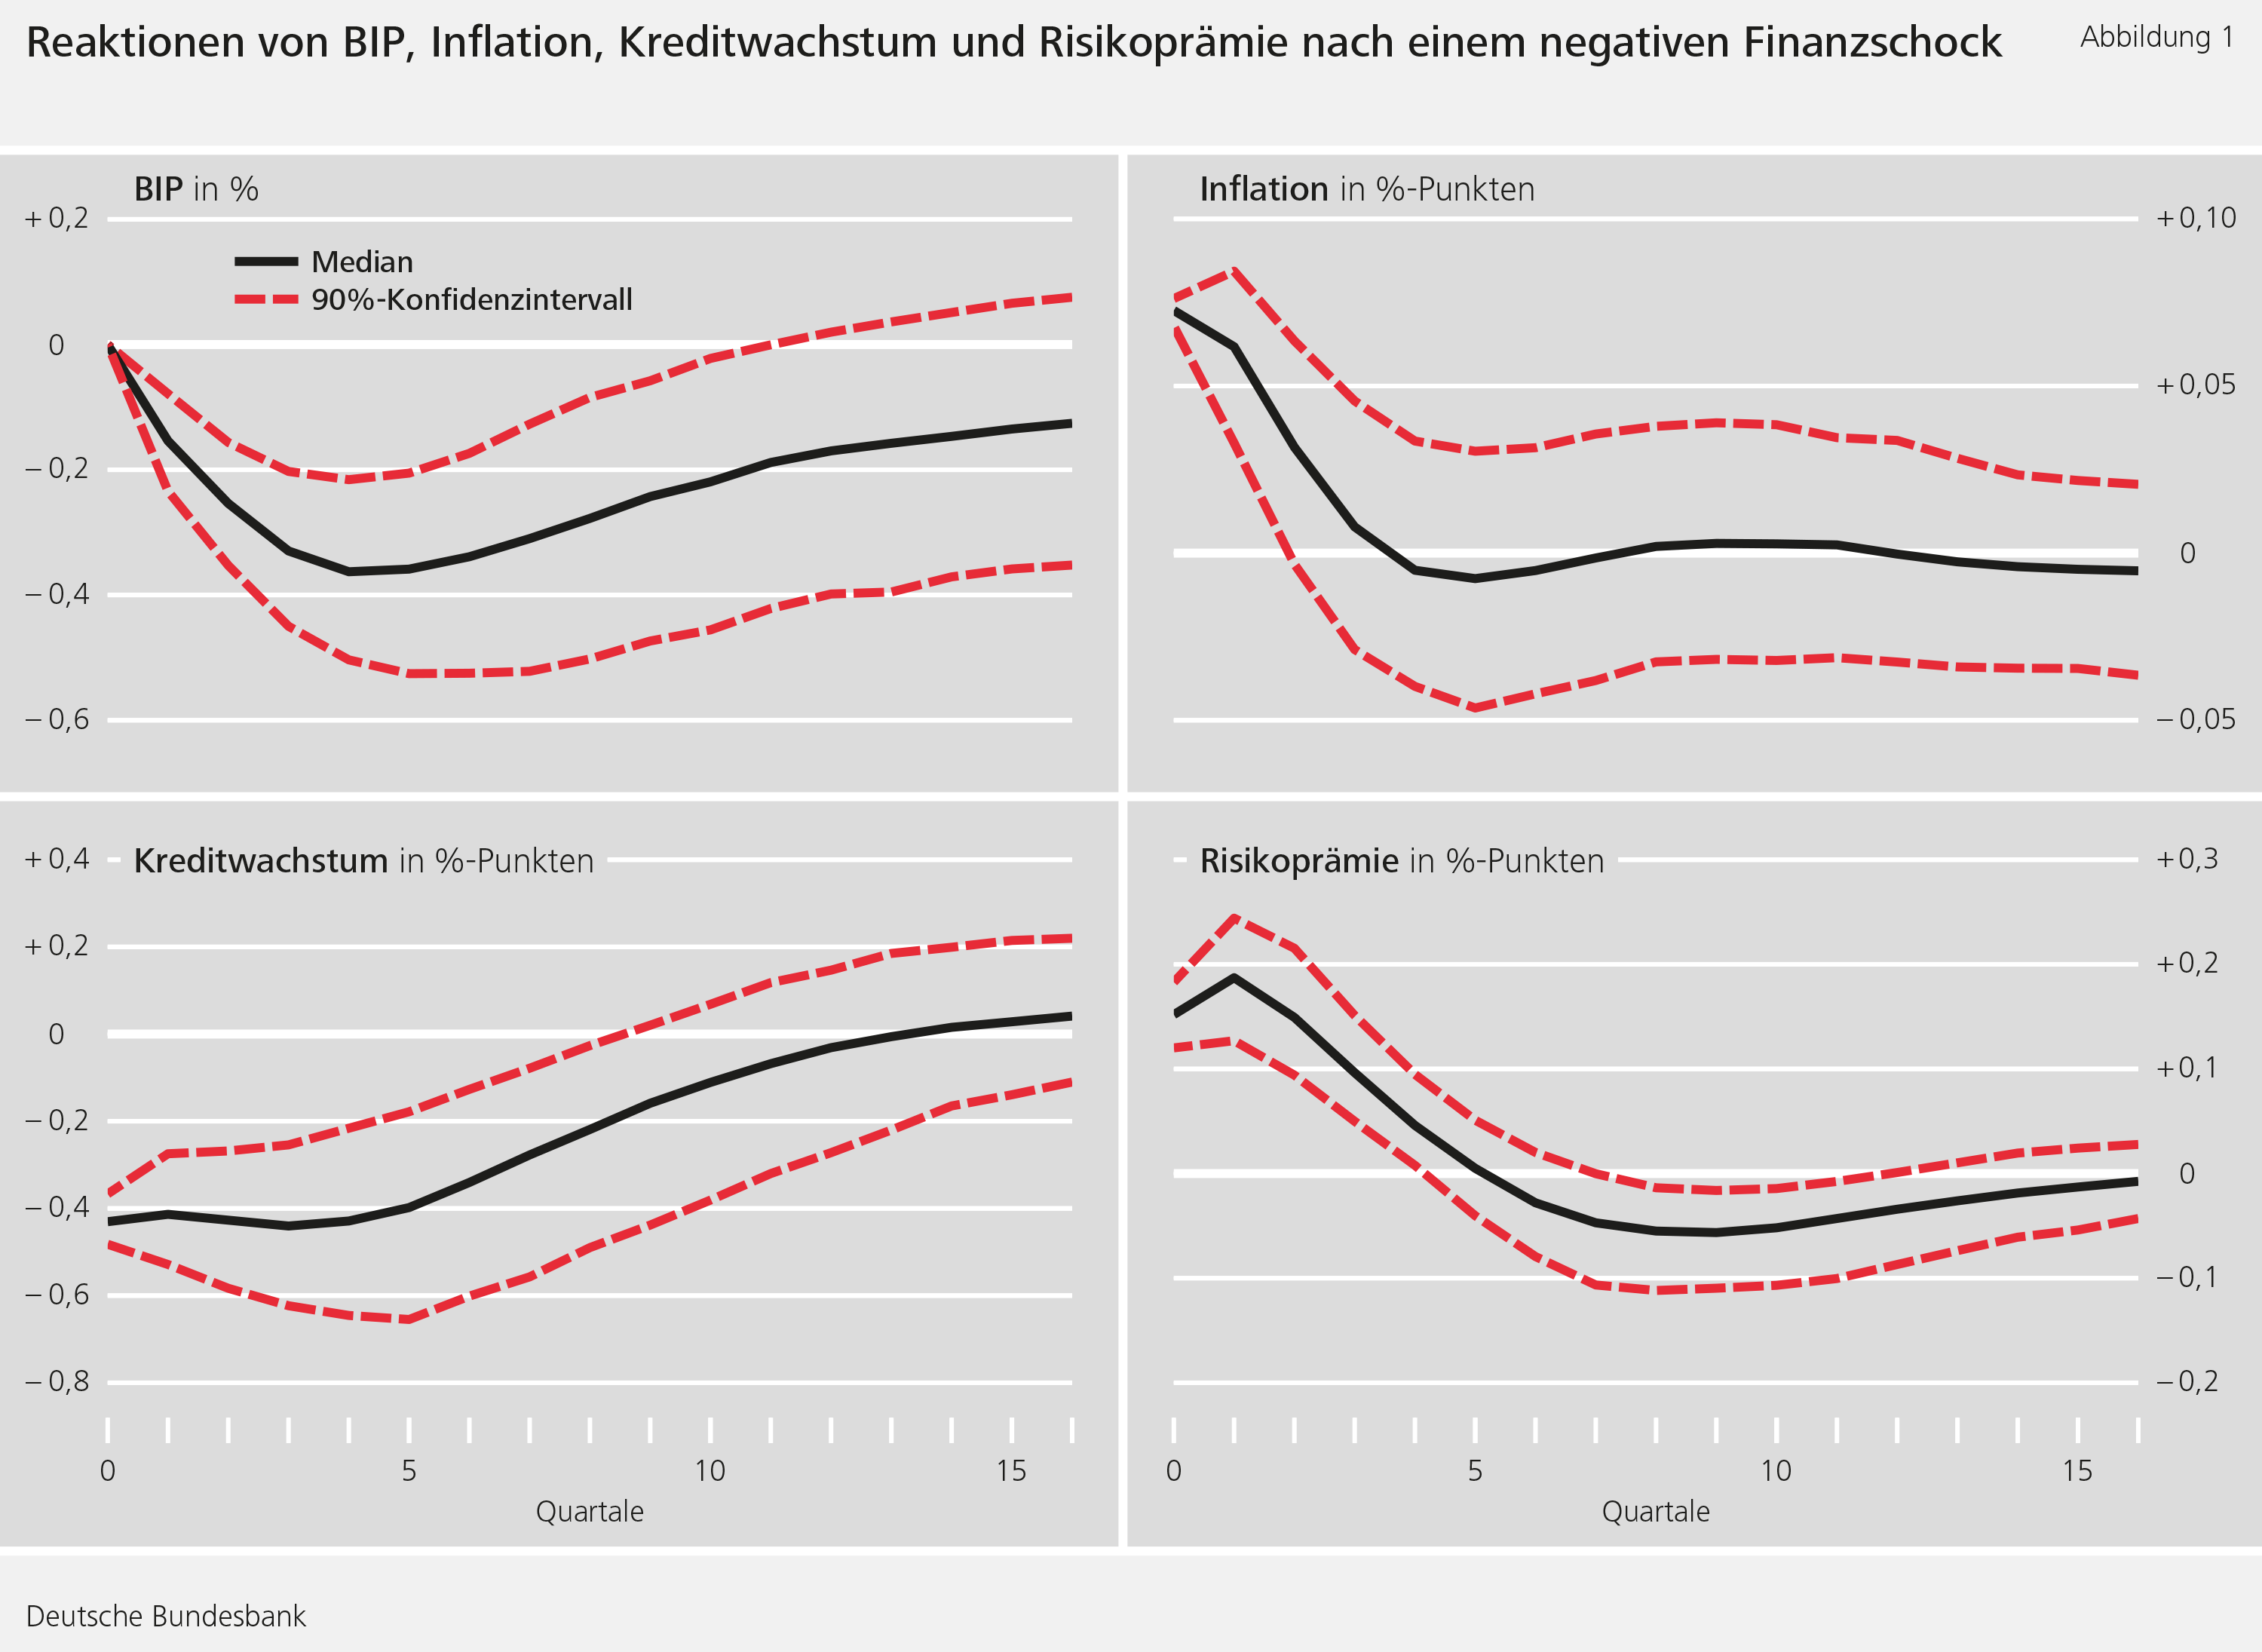 Abbildung 1: Reaktionen von BIP, Inflation, Kreditwachstum und Risikoprämie nach einem negativen Finanzschock